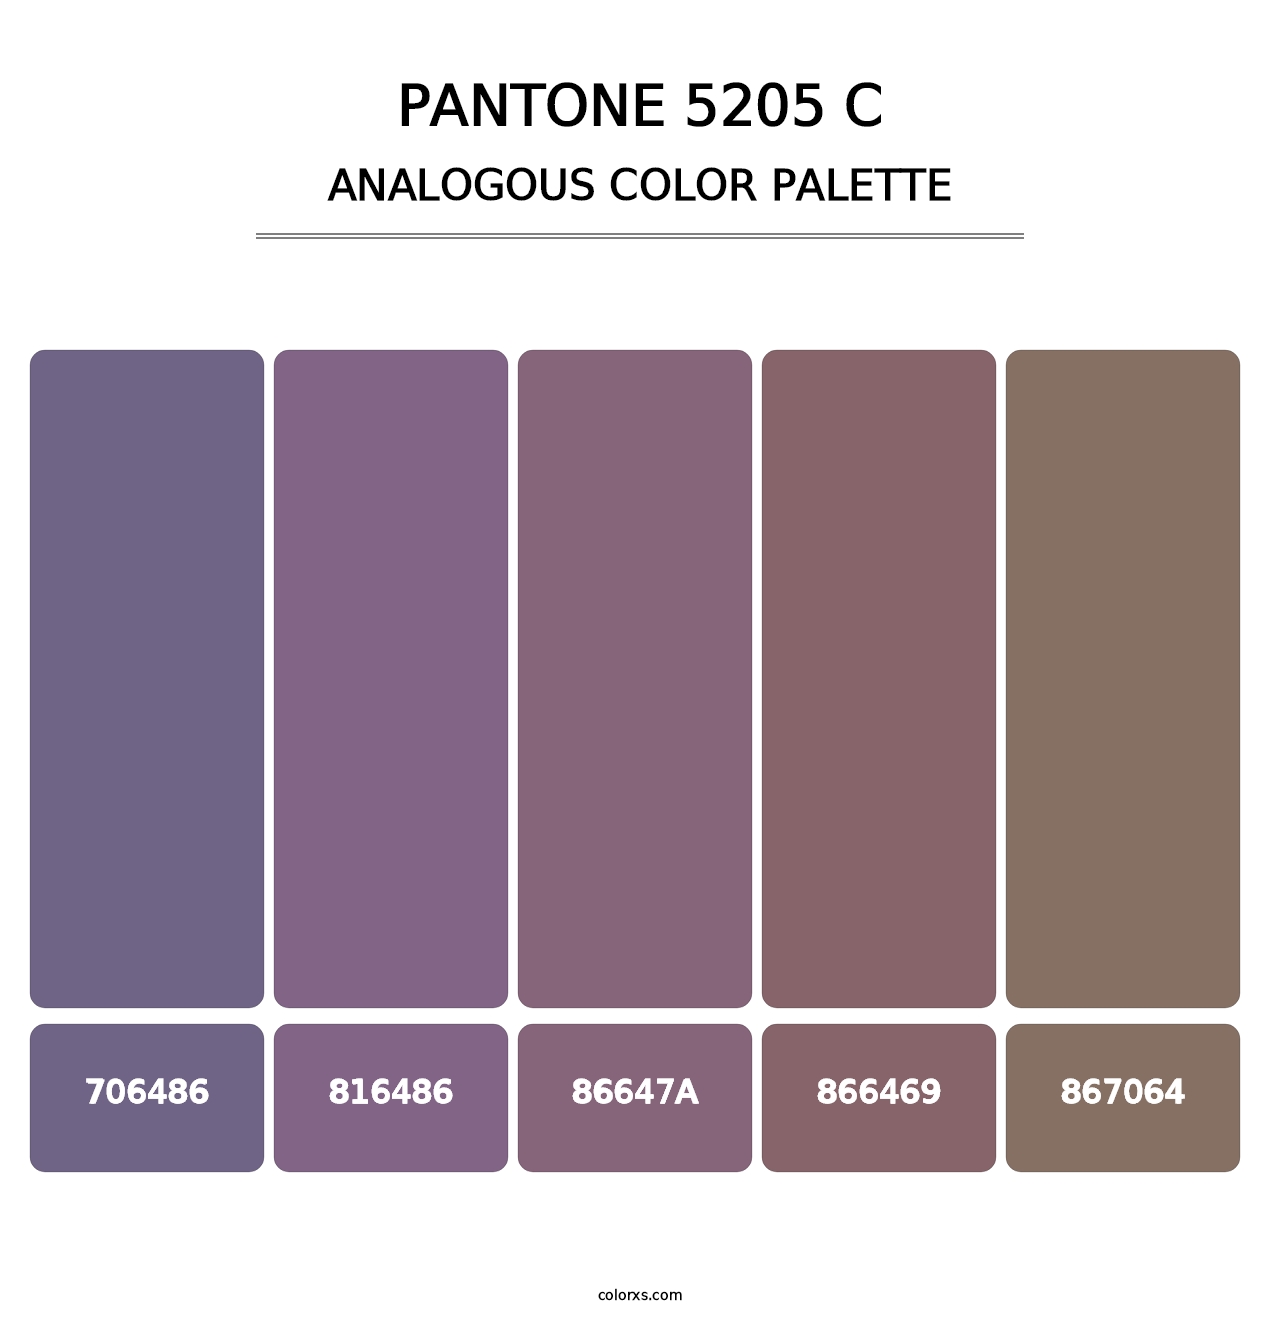 PANTONE 5205 C - Analogous Color Palette